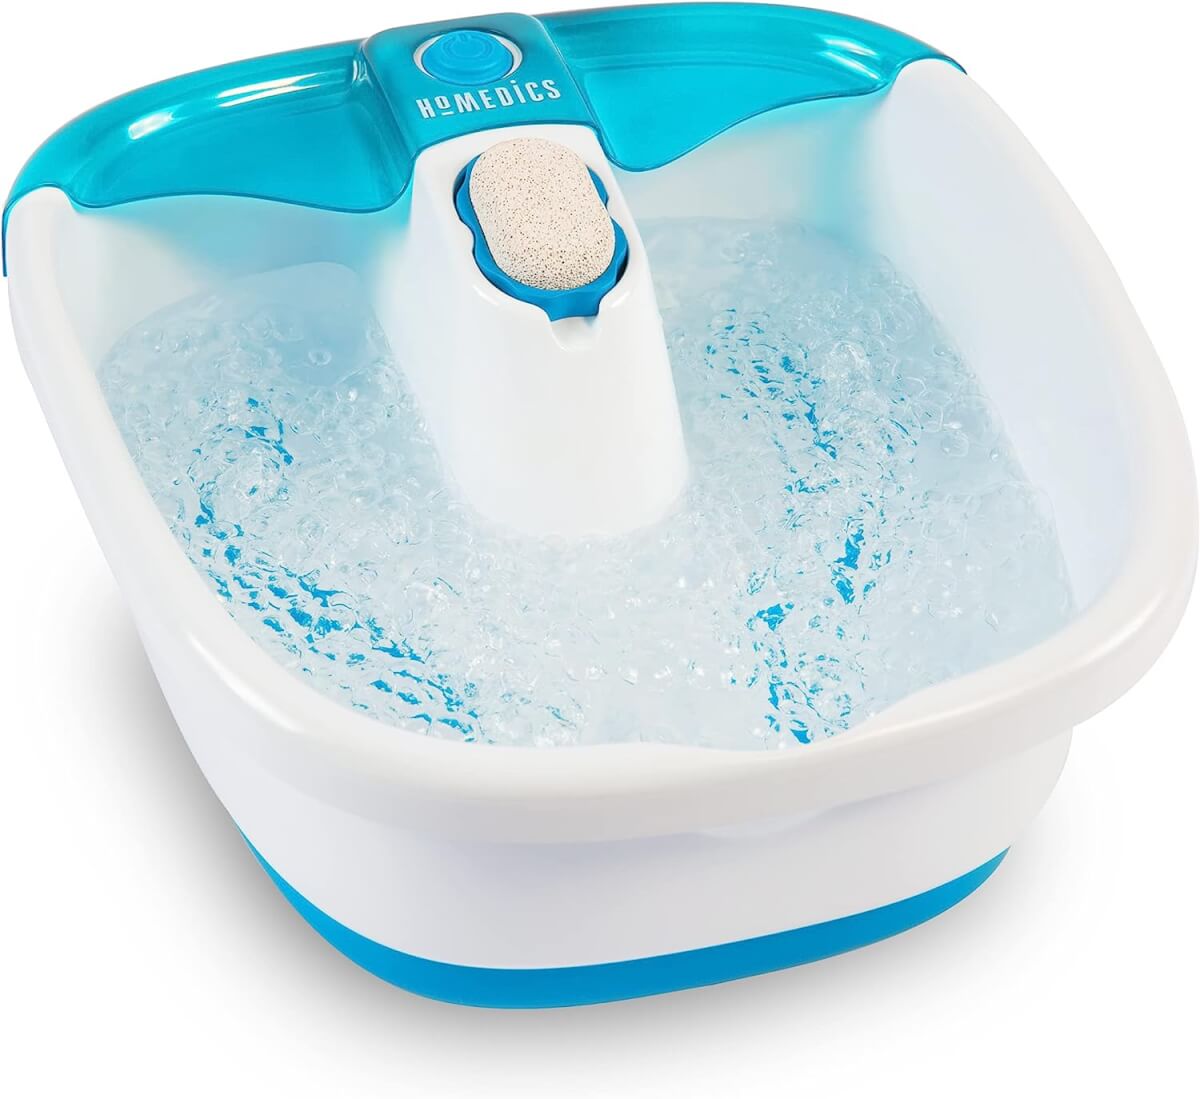 HoMedics Bubble Spa Foot Bath